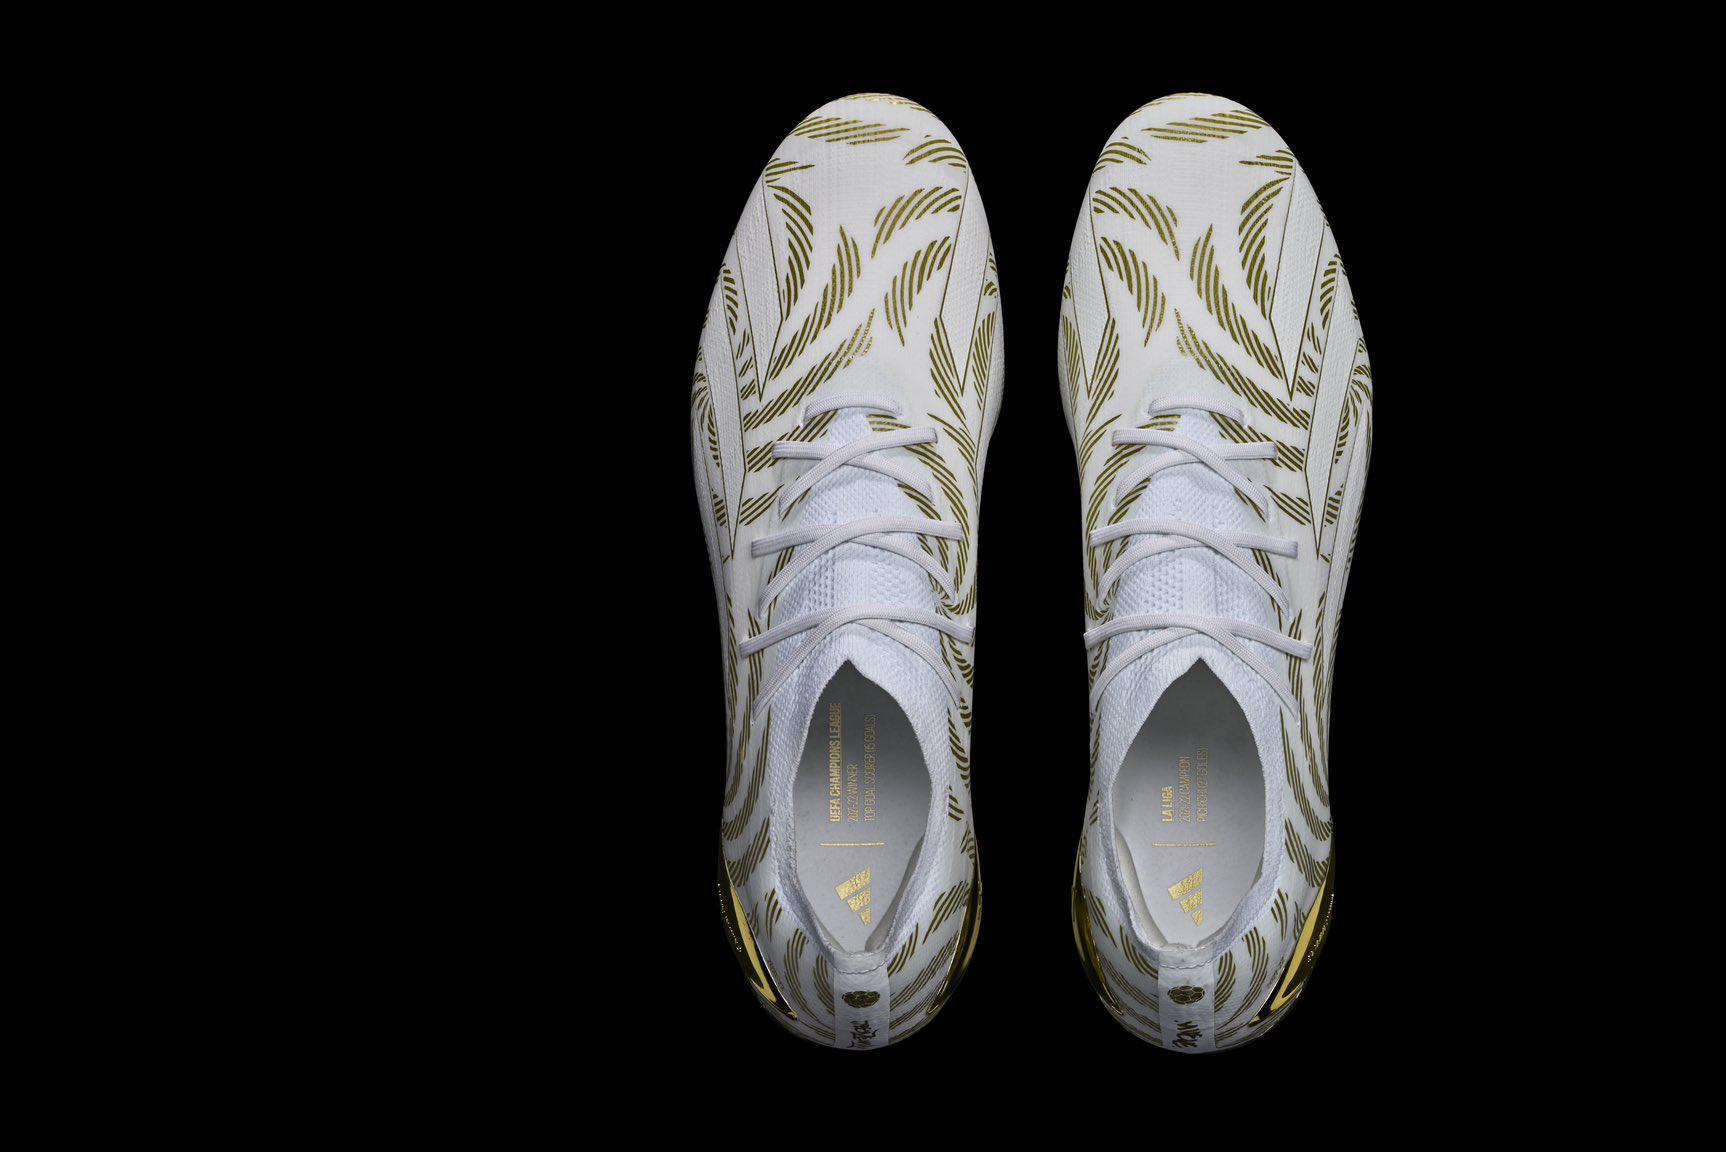 bewijs Over instelling Veilig Na Gouden Bal nu ook gouden schoenen (en windel) voor Karim Benzema om in  te schitteren bij Real Madrid | Het Nieuwsblad Mobile